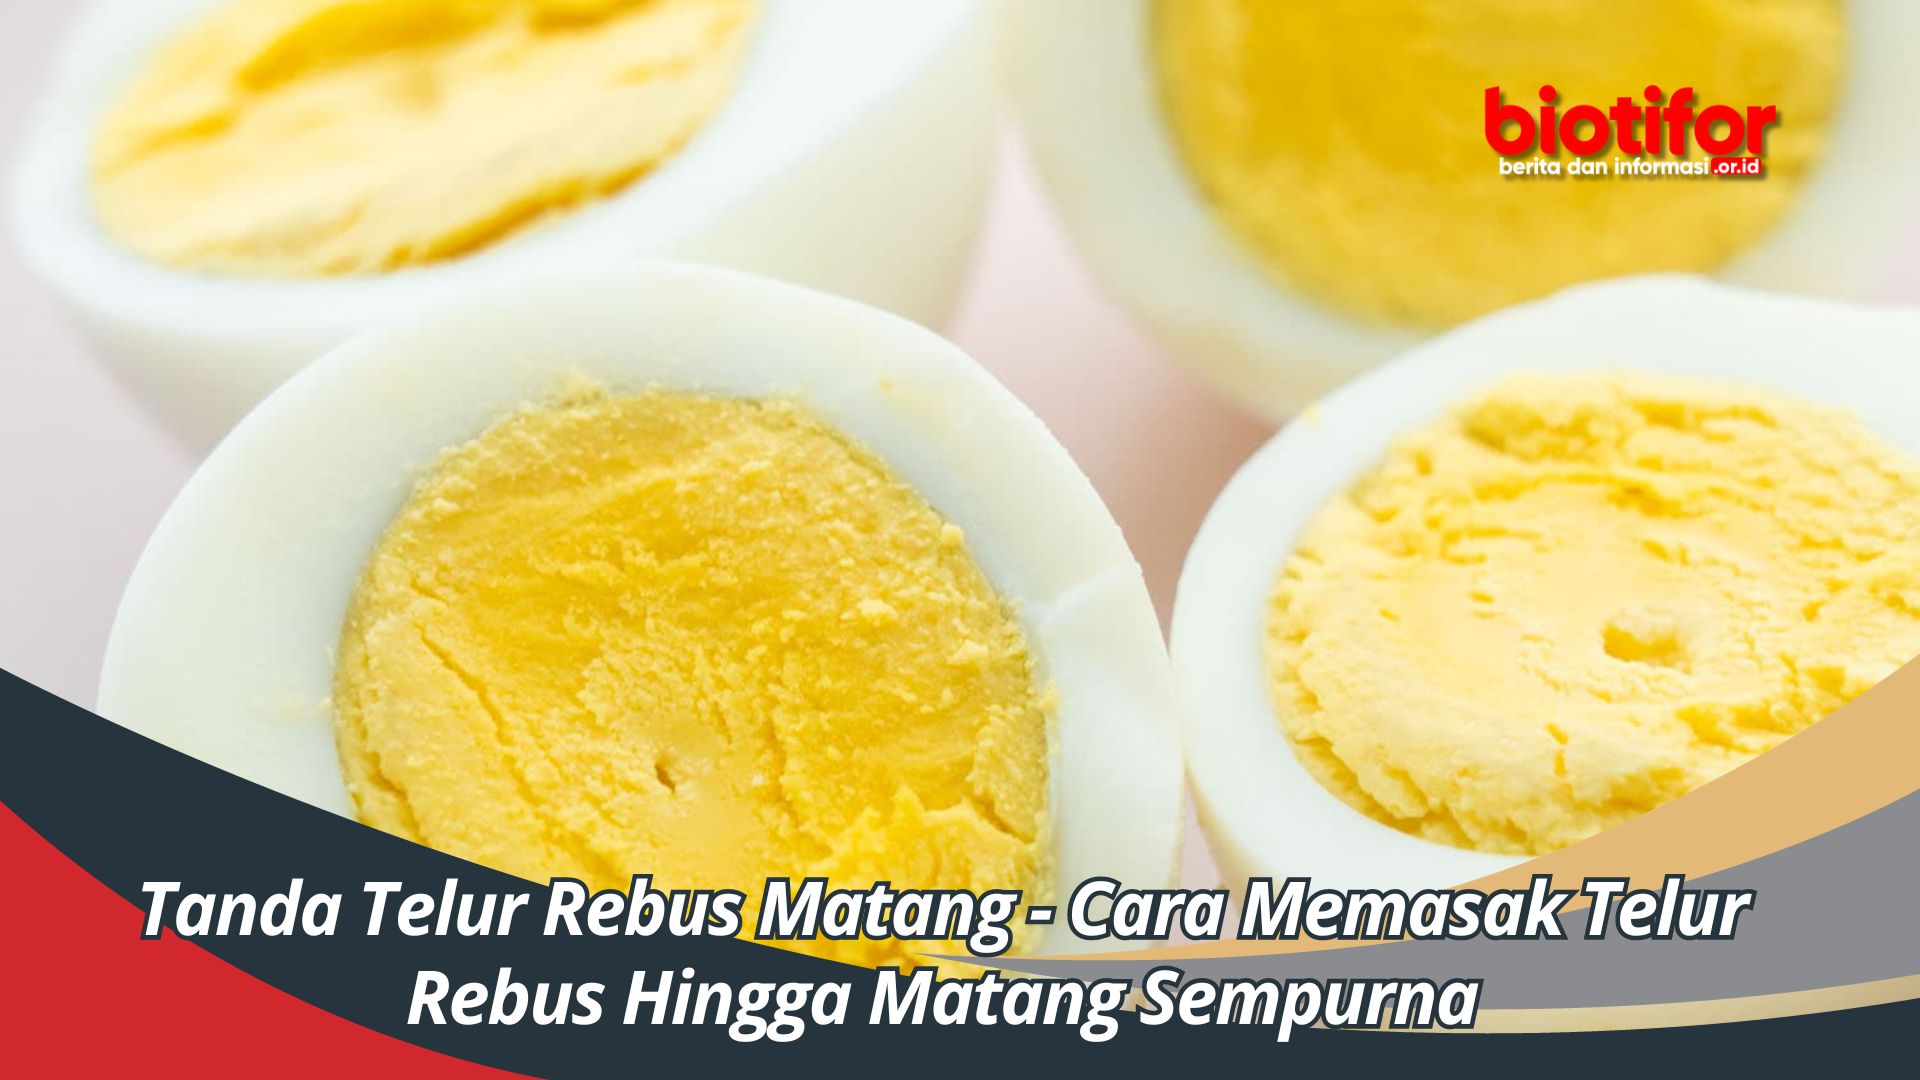 Tanda Telur Rebus Matang - Cara Memasak Telur Rebus Hingga Matang Sempurna